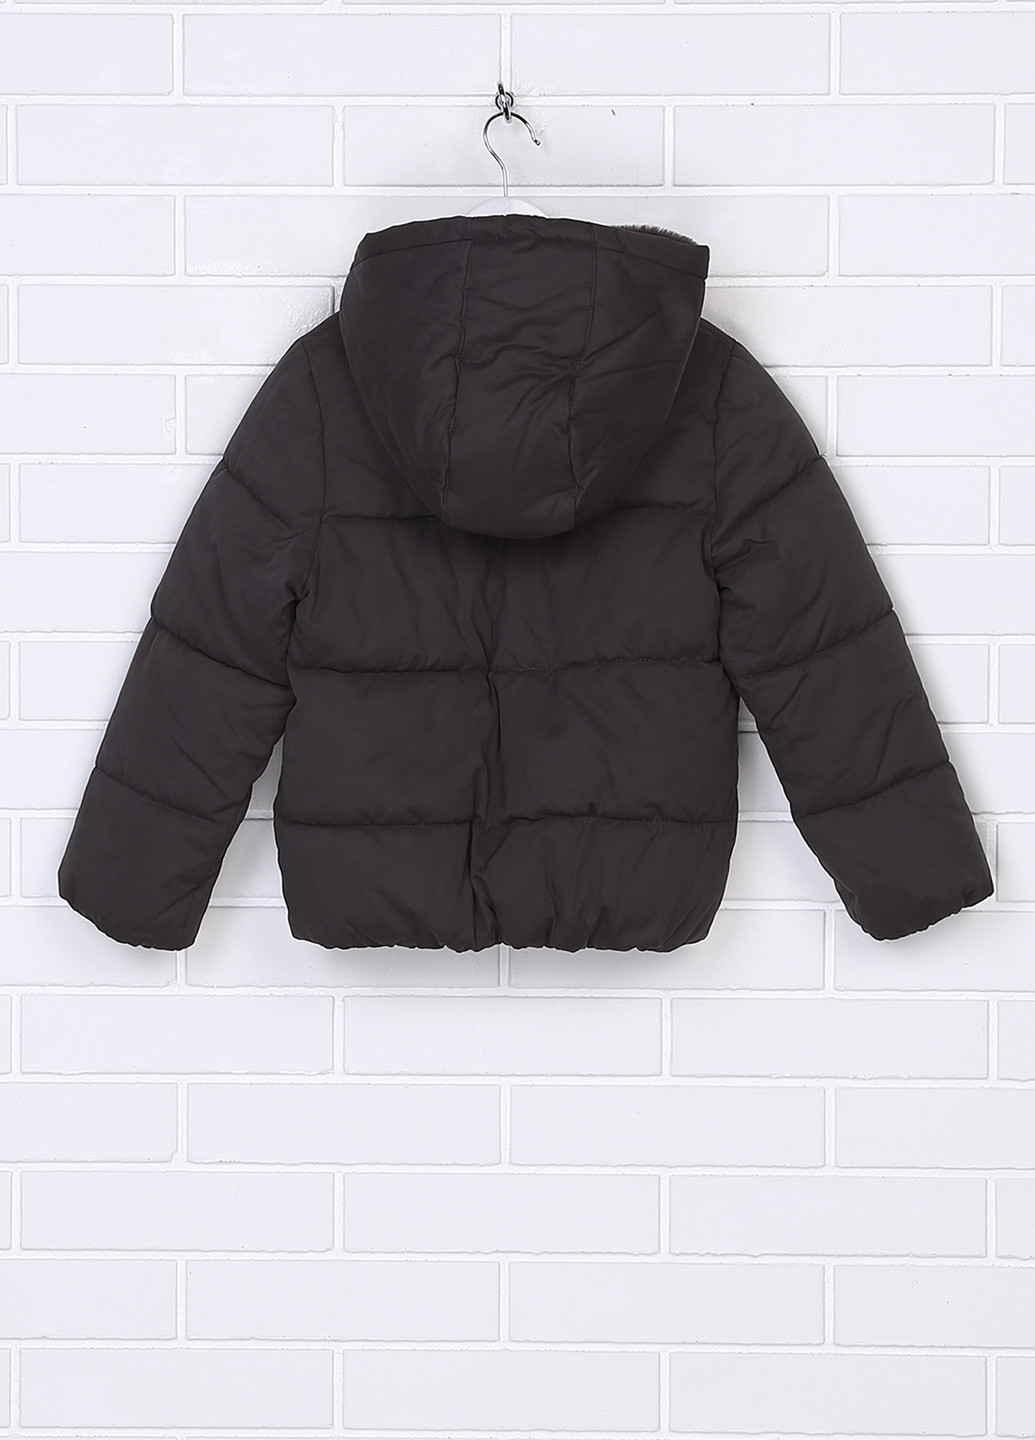 Темно-серая зимняя куртка Kiabi